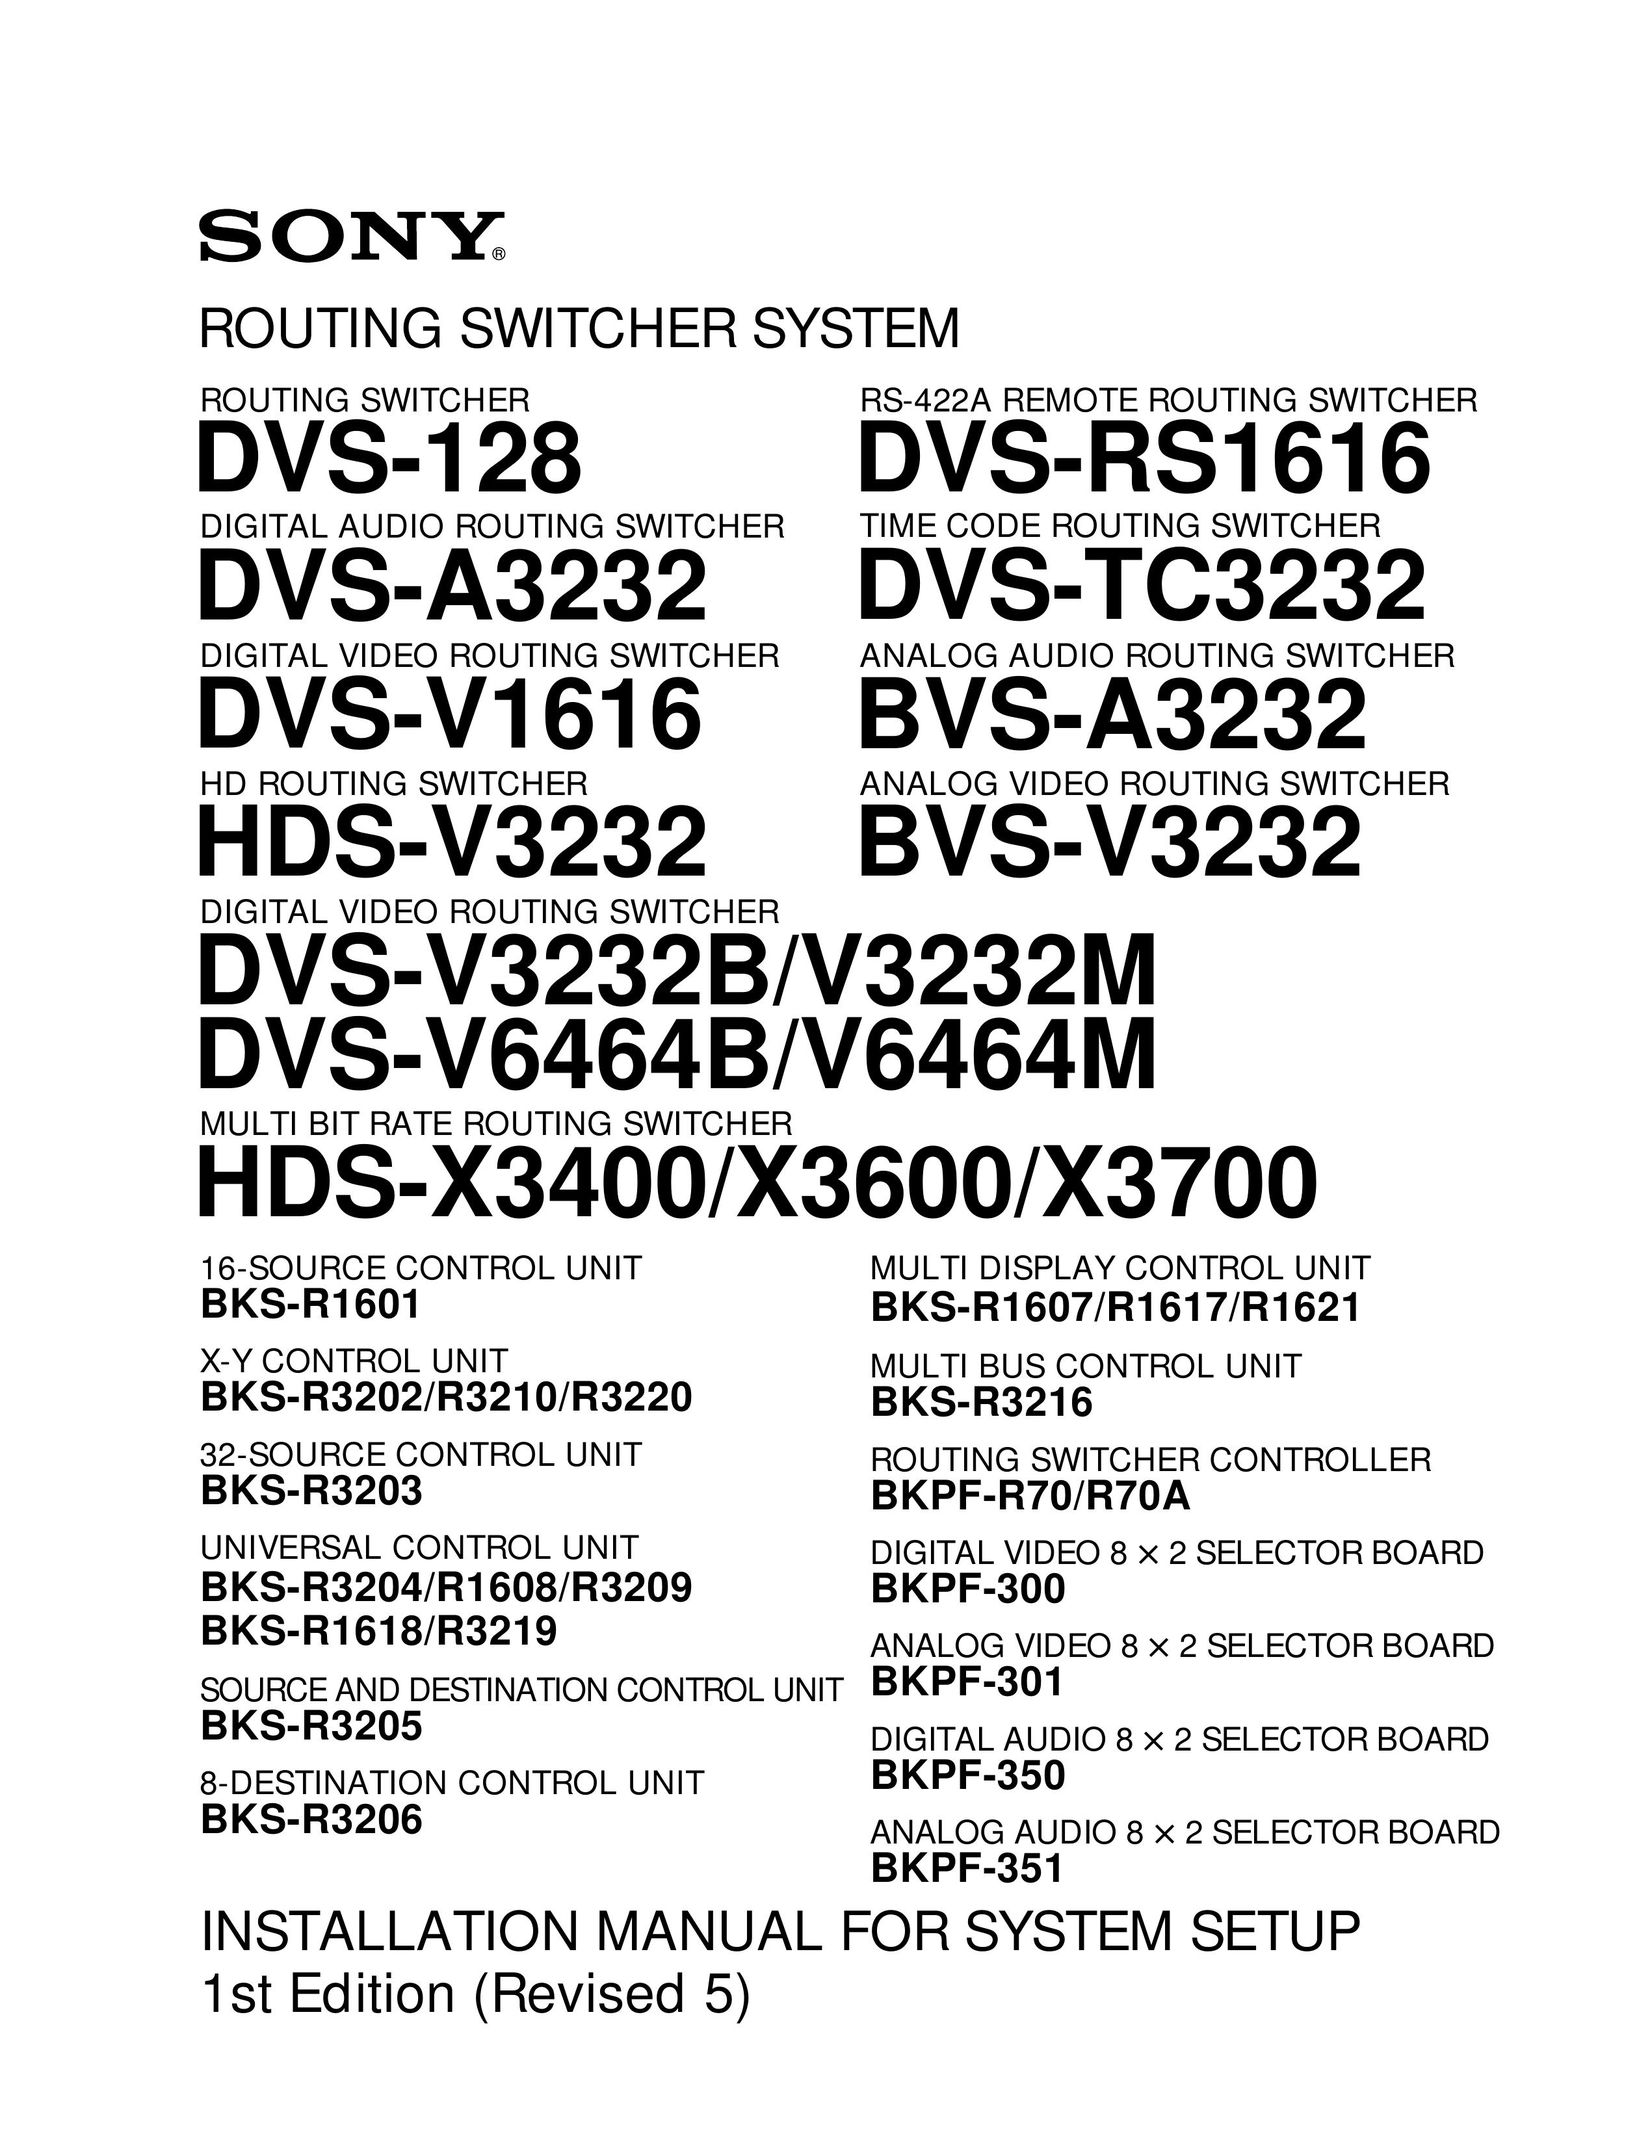 Sony DVS-A3232 Switch User Manual